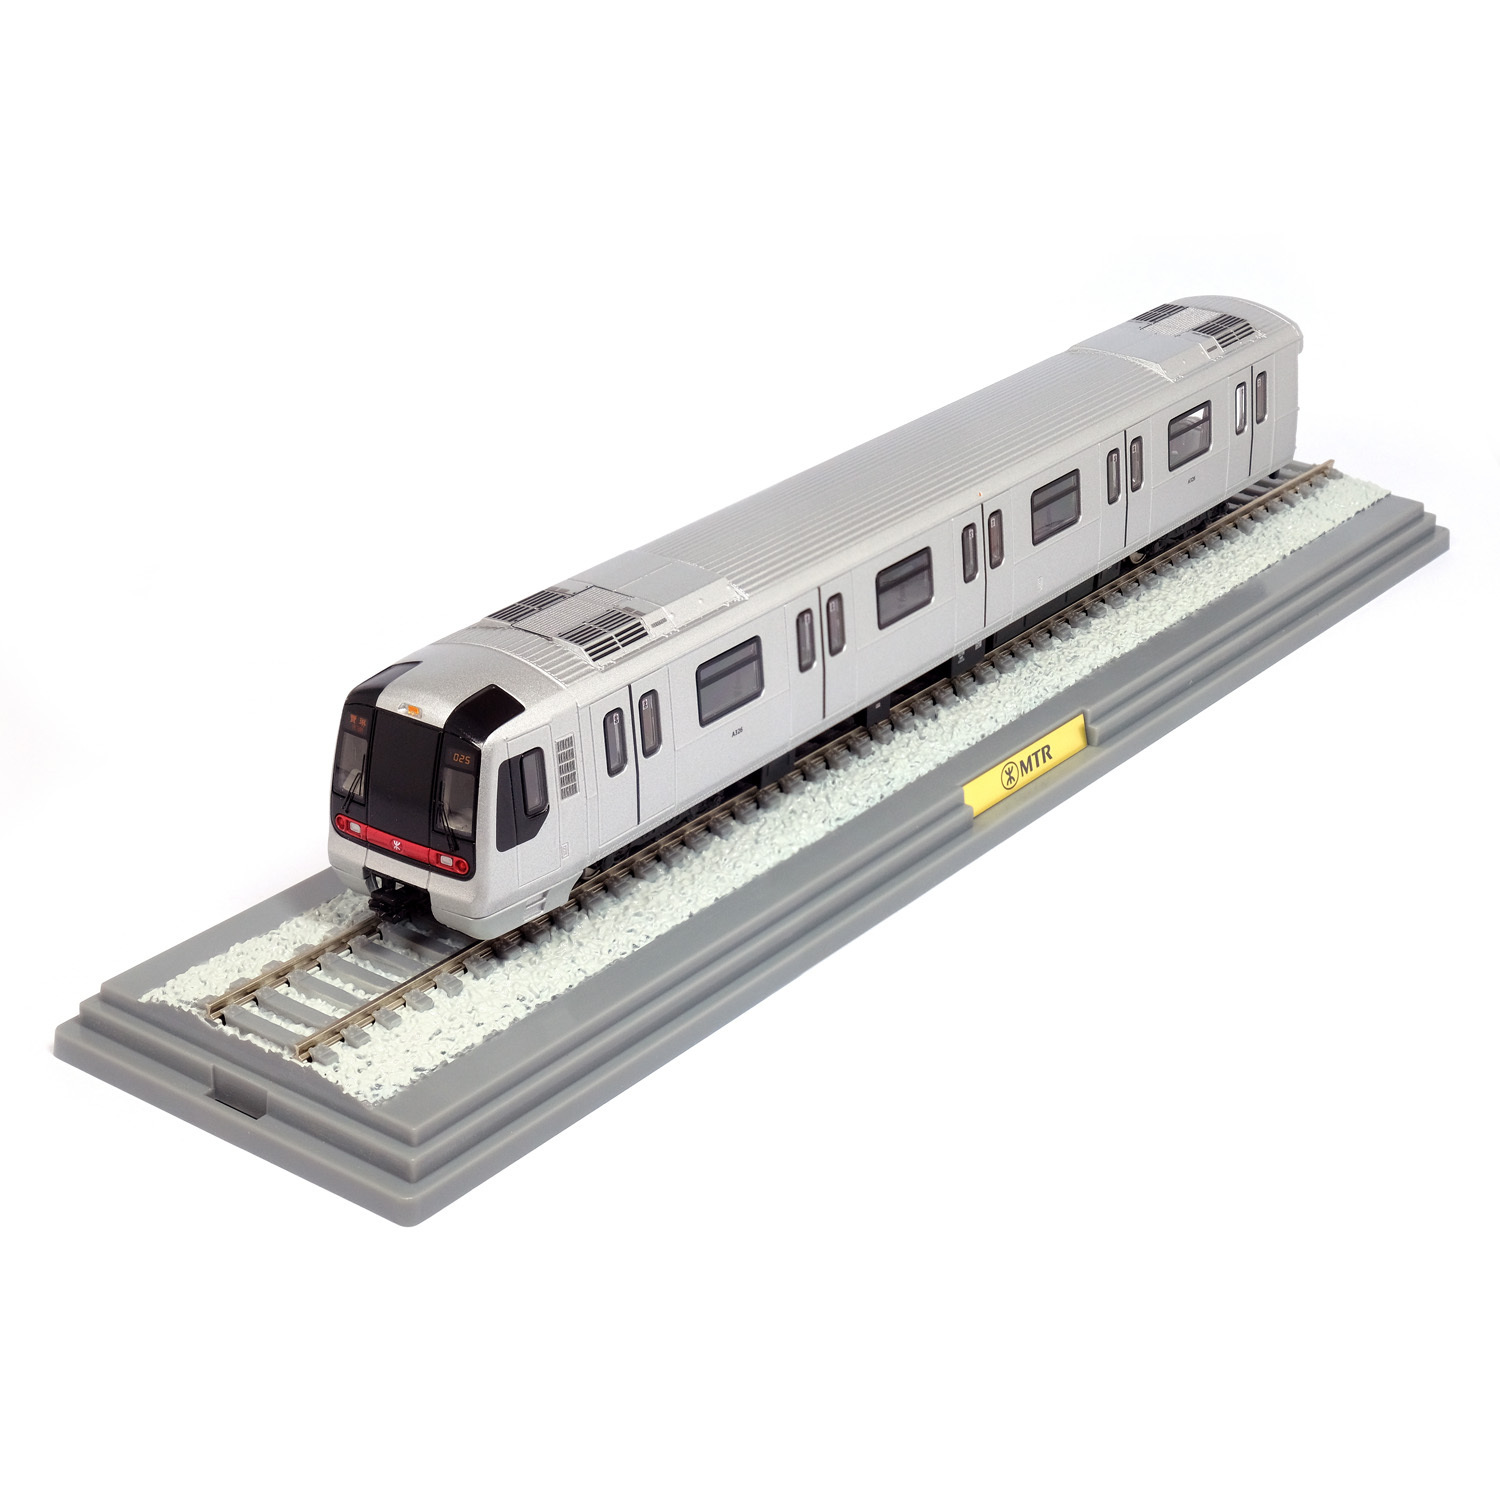 港鐵網上商店> 1:87 列車模型| MTR K Train 載客列車